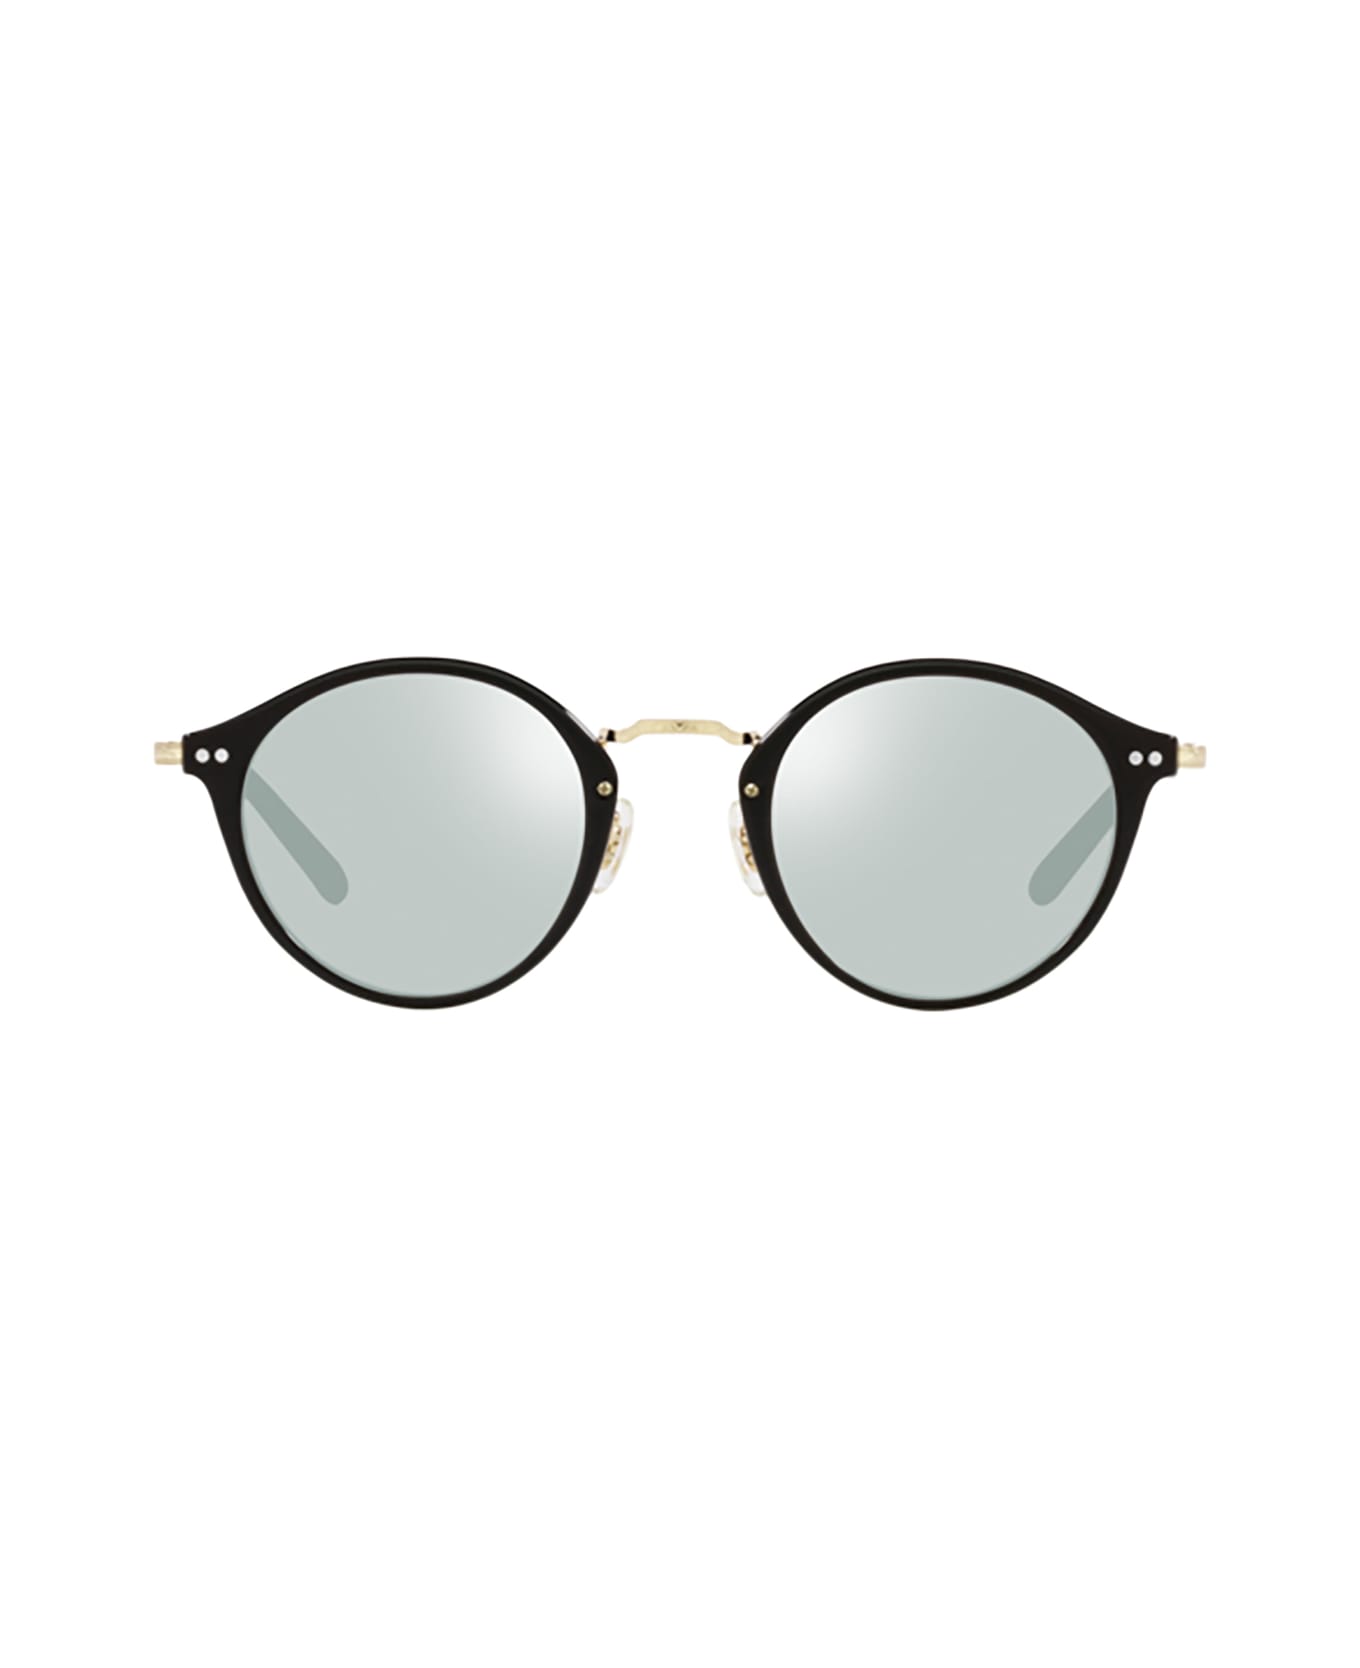 Oliver Peoples Ov5448t Black / Gold Glasses - Black / Gold